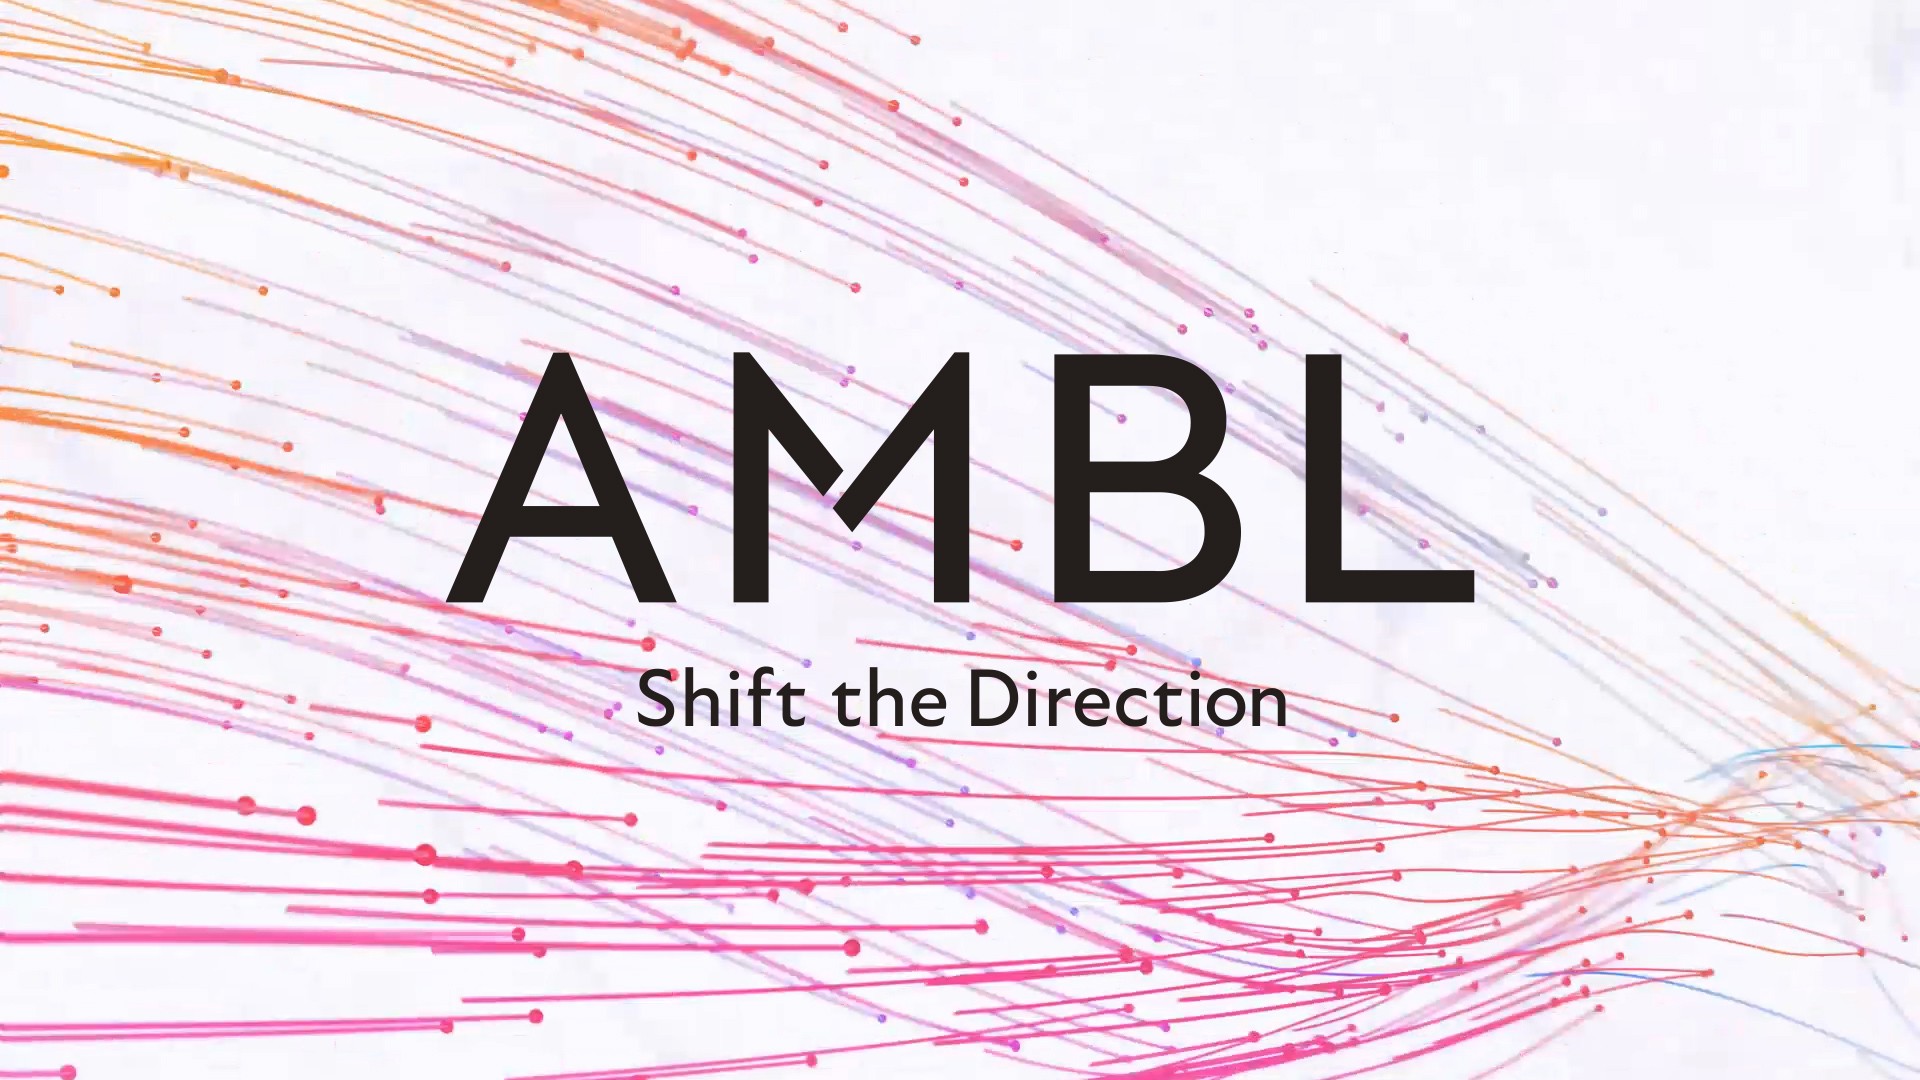 AMBL株式会社のAMBL株式会社サービス